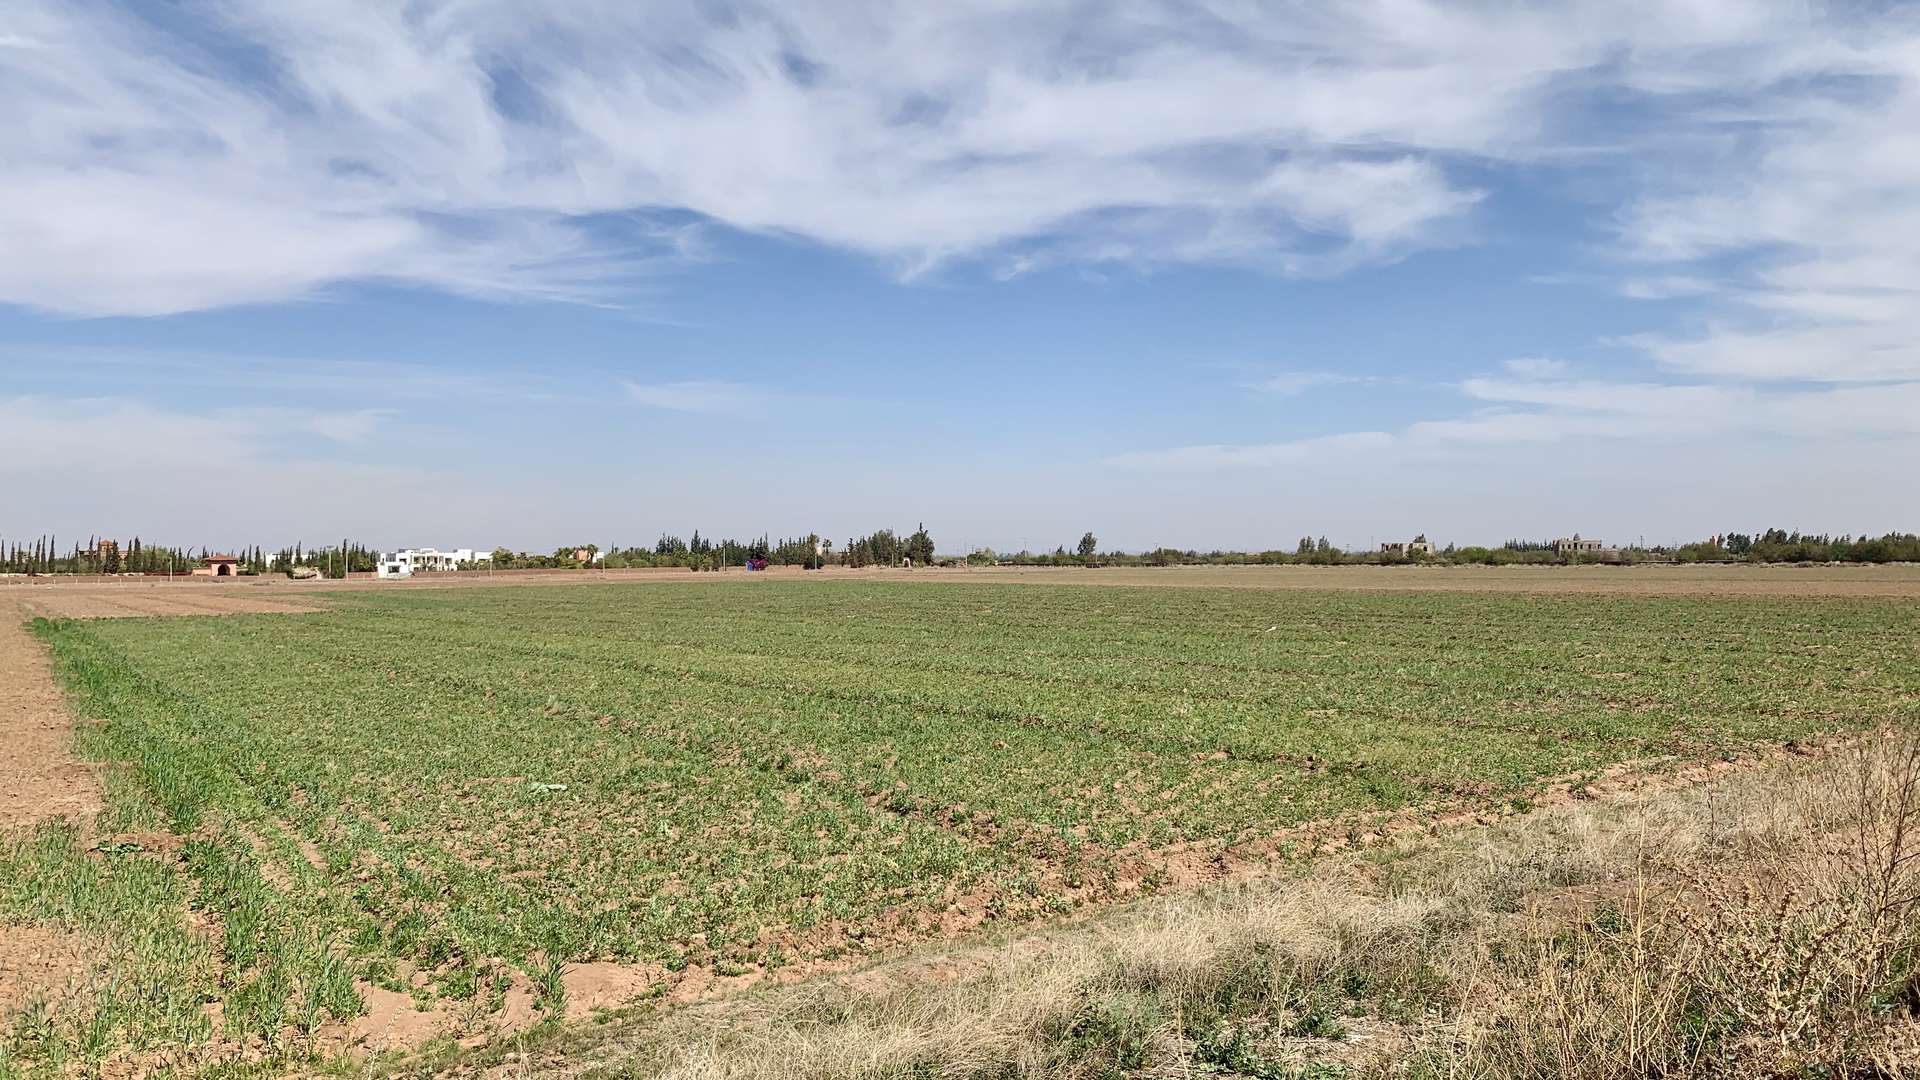 Vente,Terrains & Fermes,Lots de terrain d'1 Ha titrés et bien situés sur la route de l'Ourika ,Marrakech,Route de l'Ourika